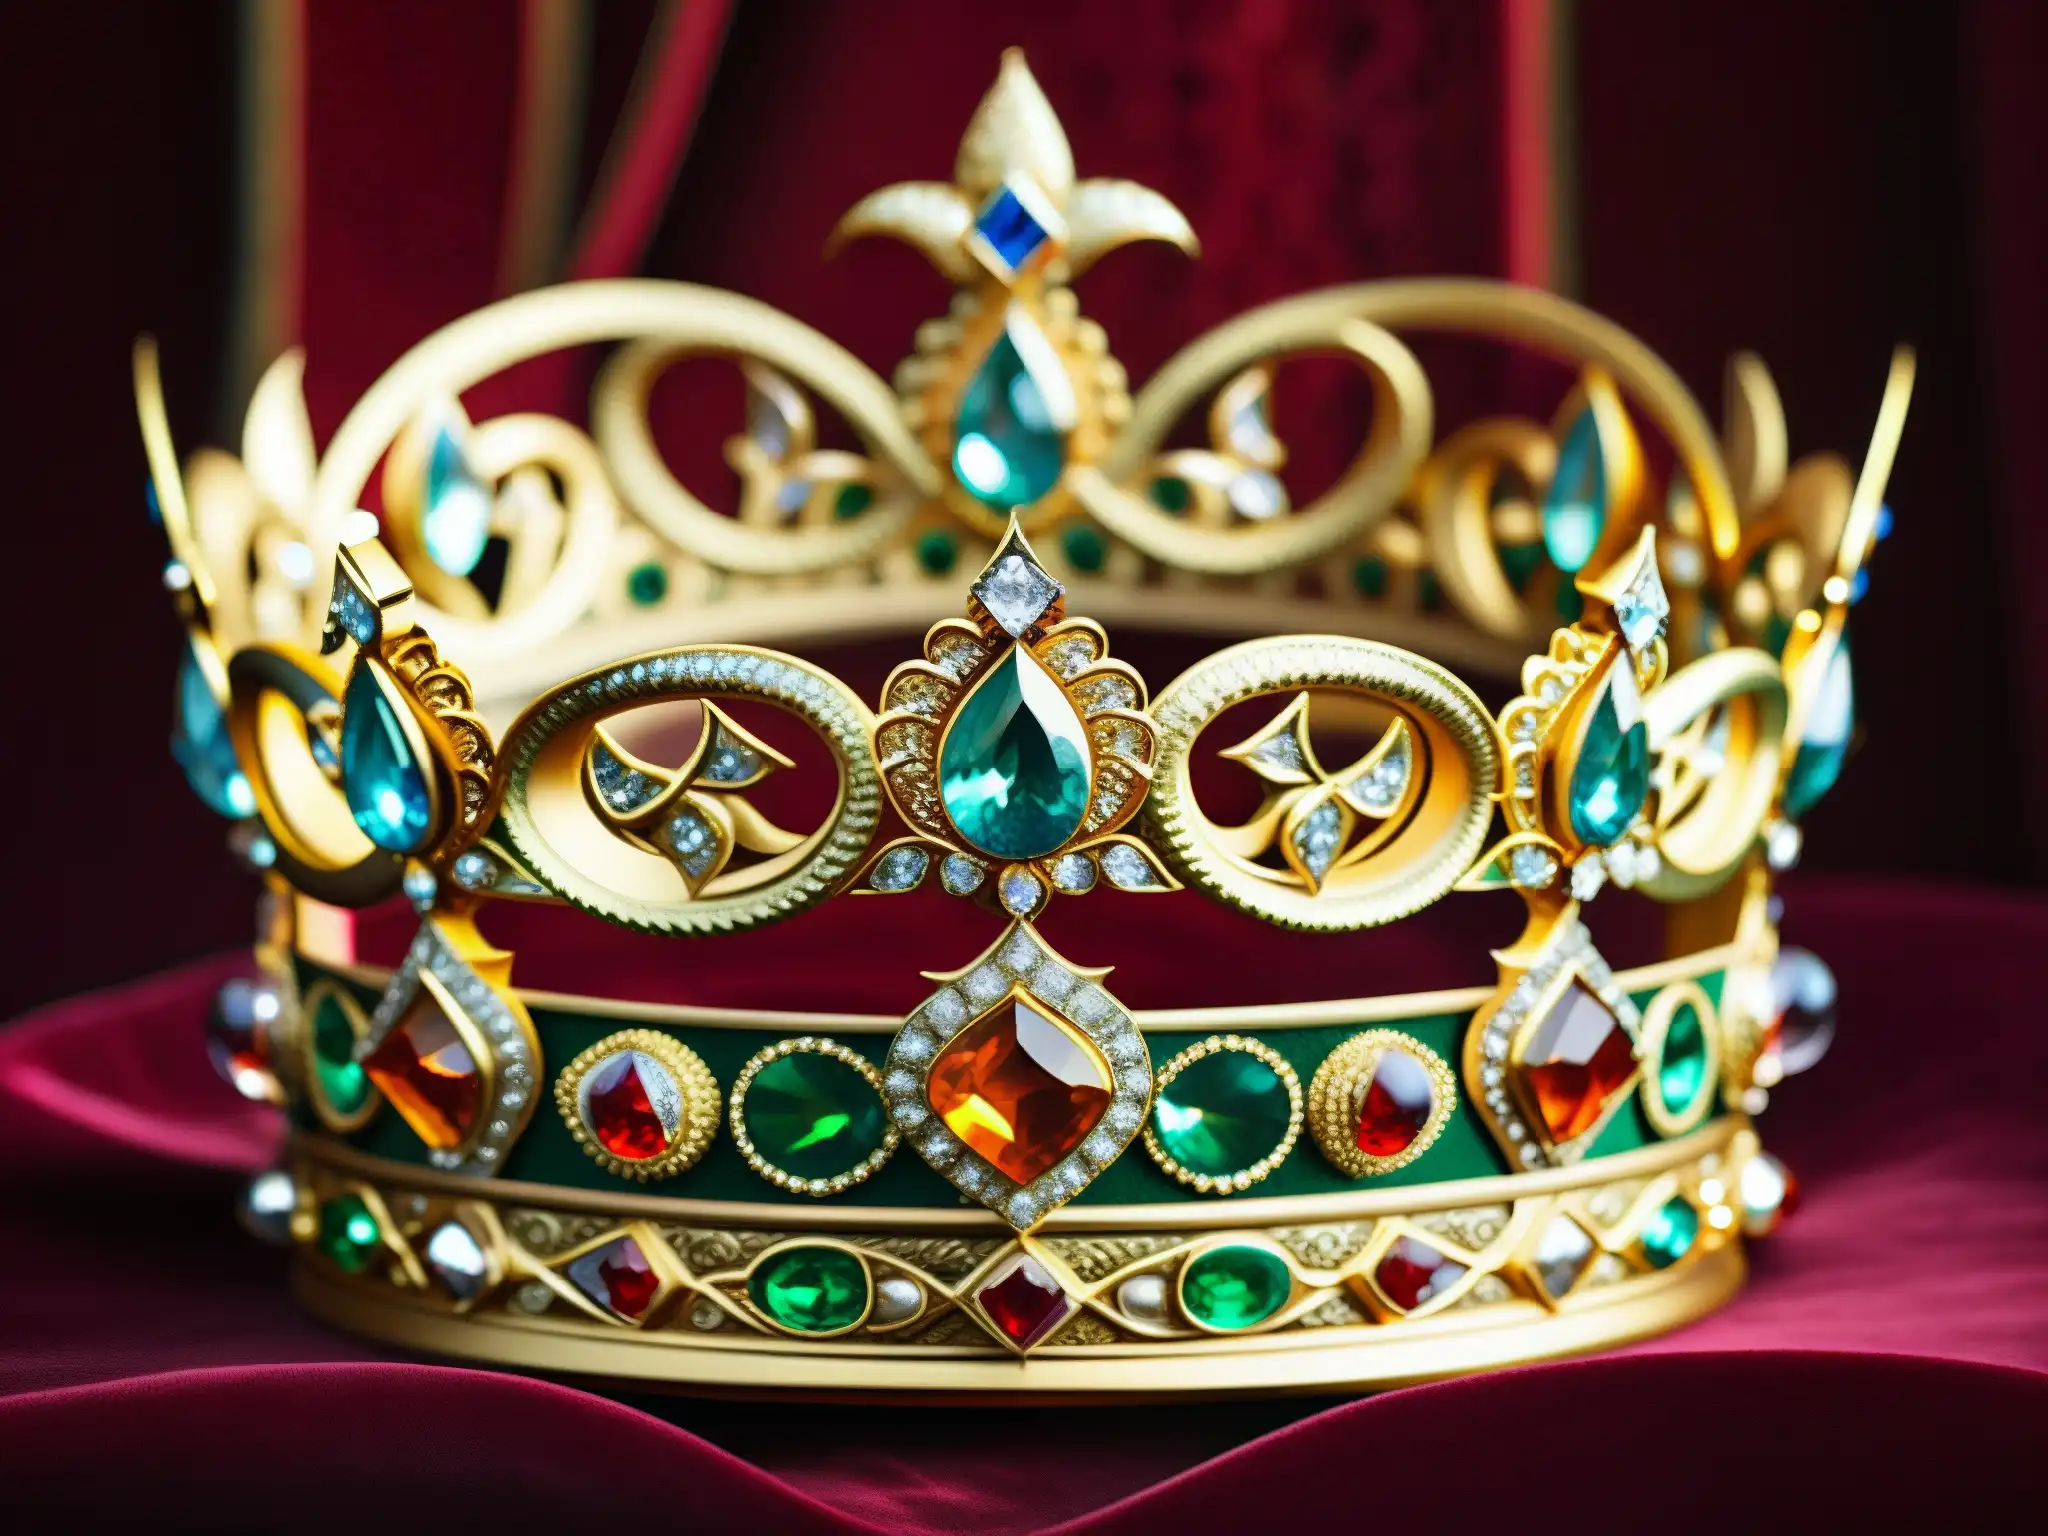 Una corona real adornada con joyas brillantes y detalles intrincados, sobre un fondo de terciopelo